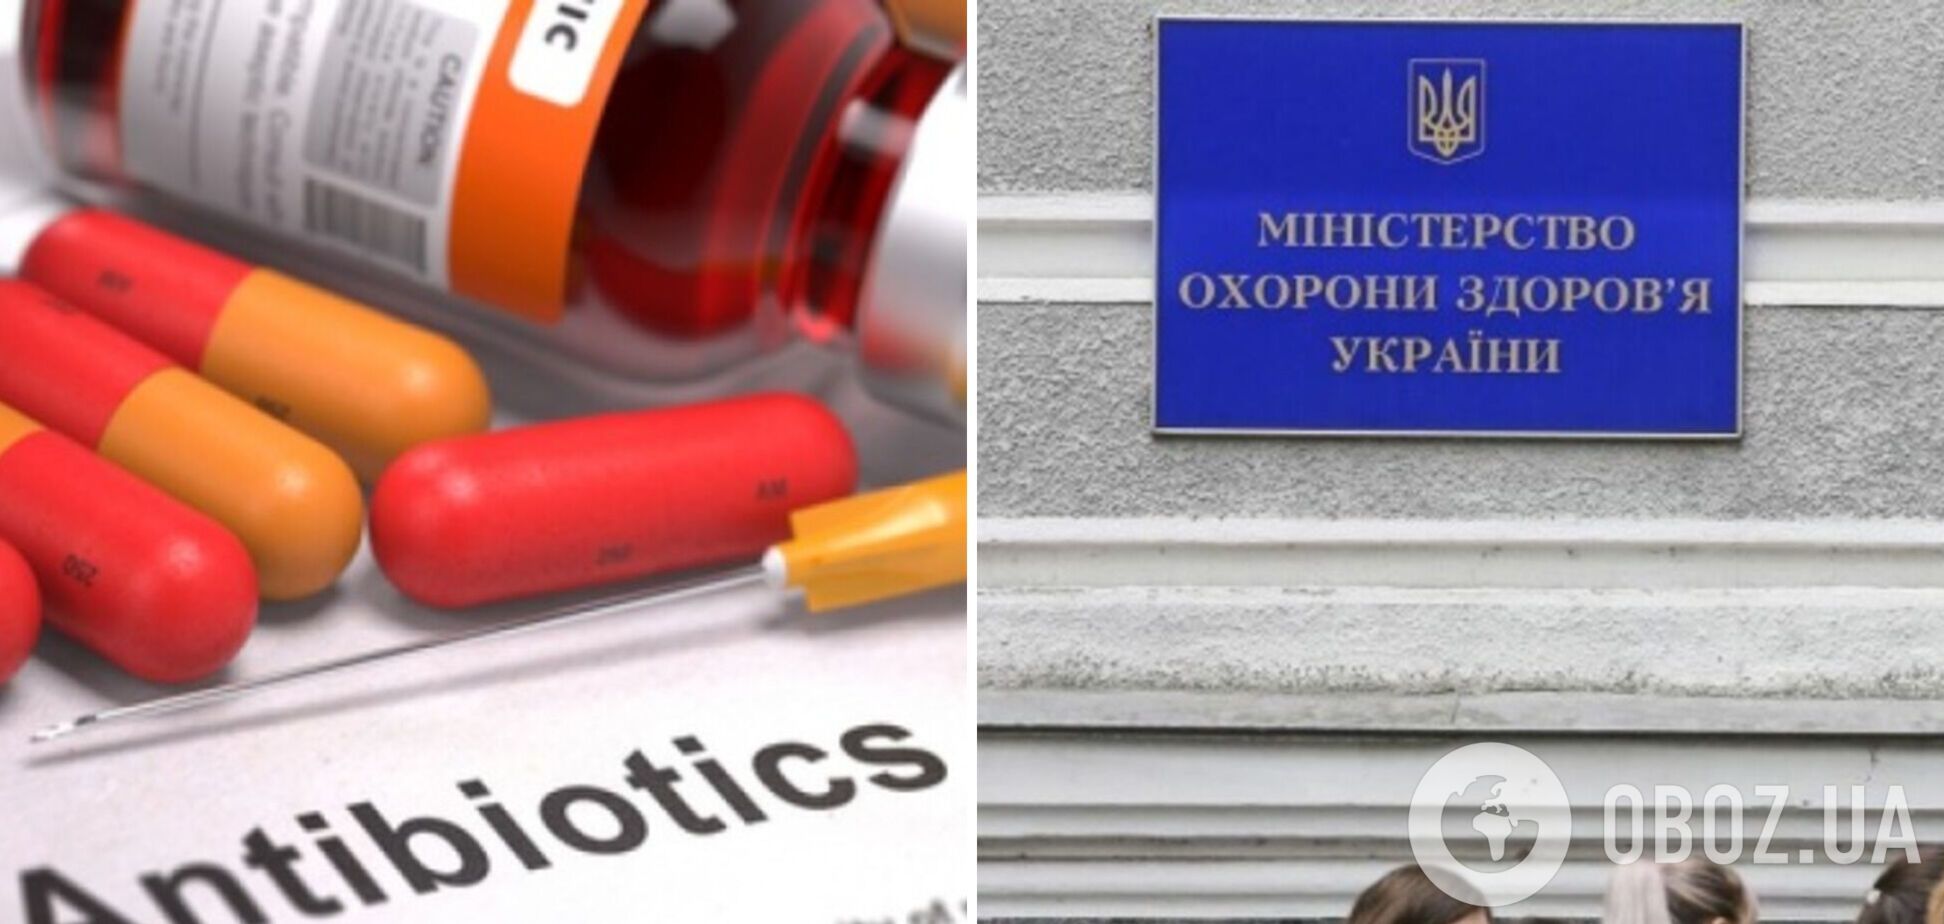 МОЗ: за перші 4 дні в Україні виписали майже 10 тисяч електронних рецептів на антибіотики